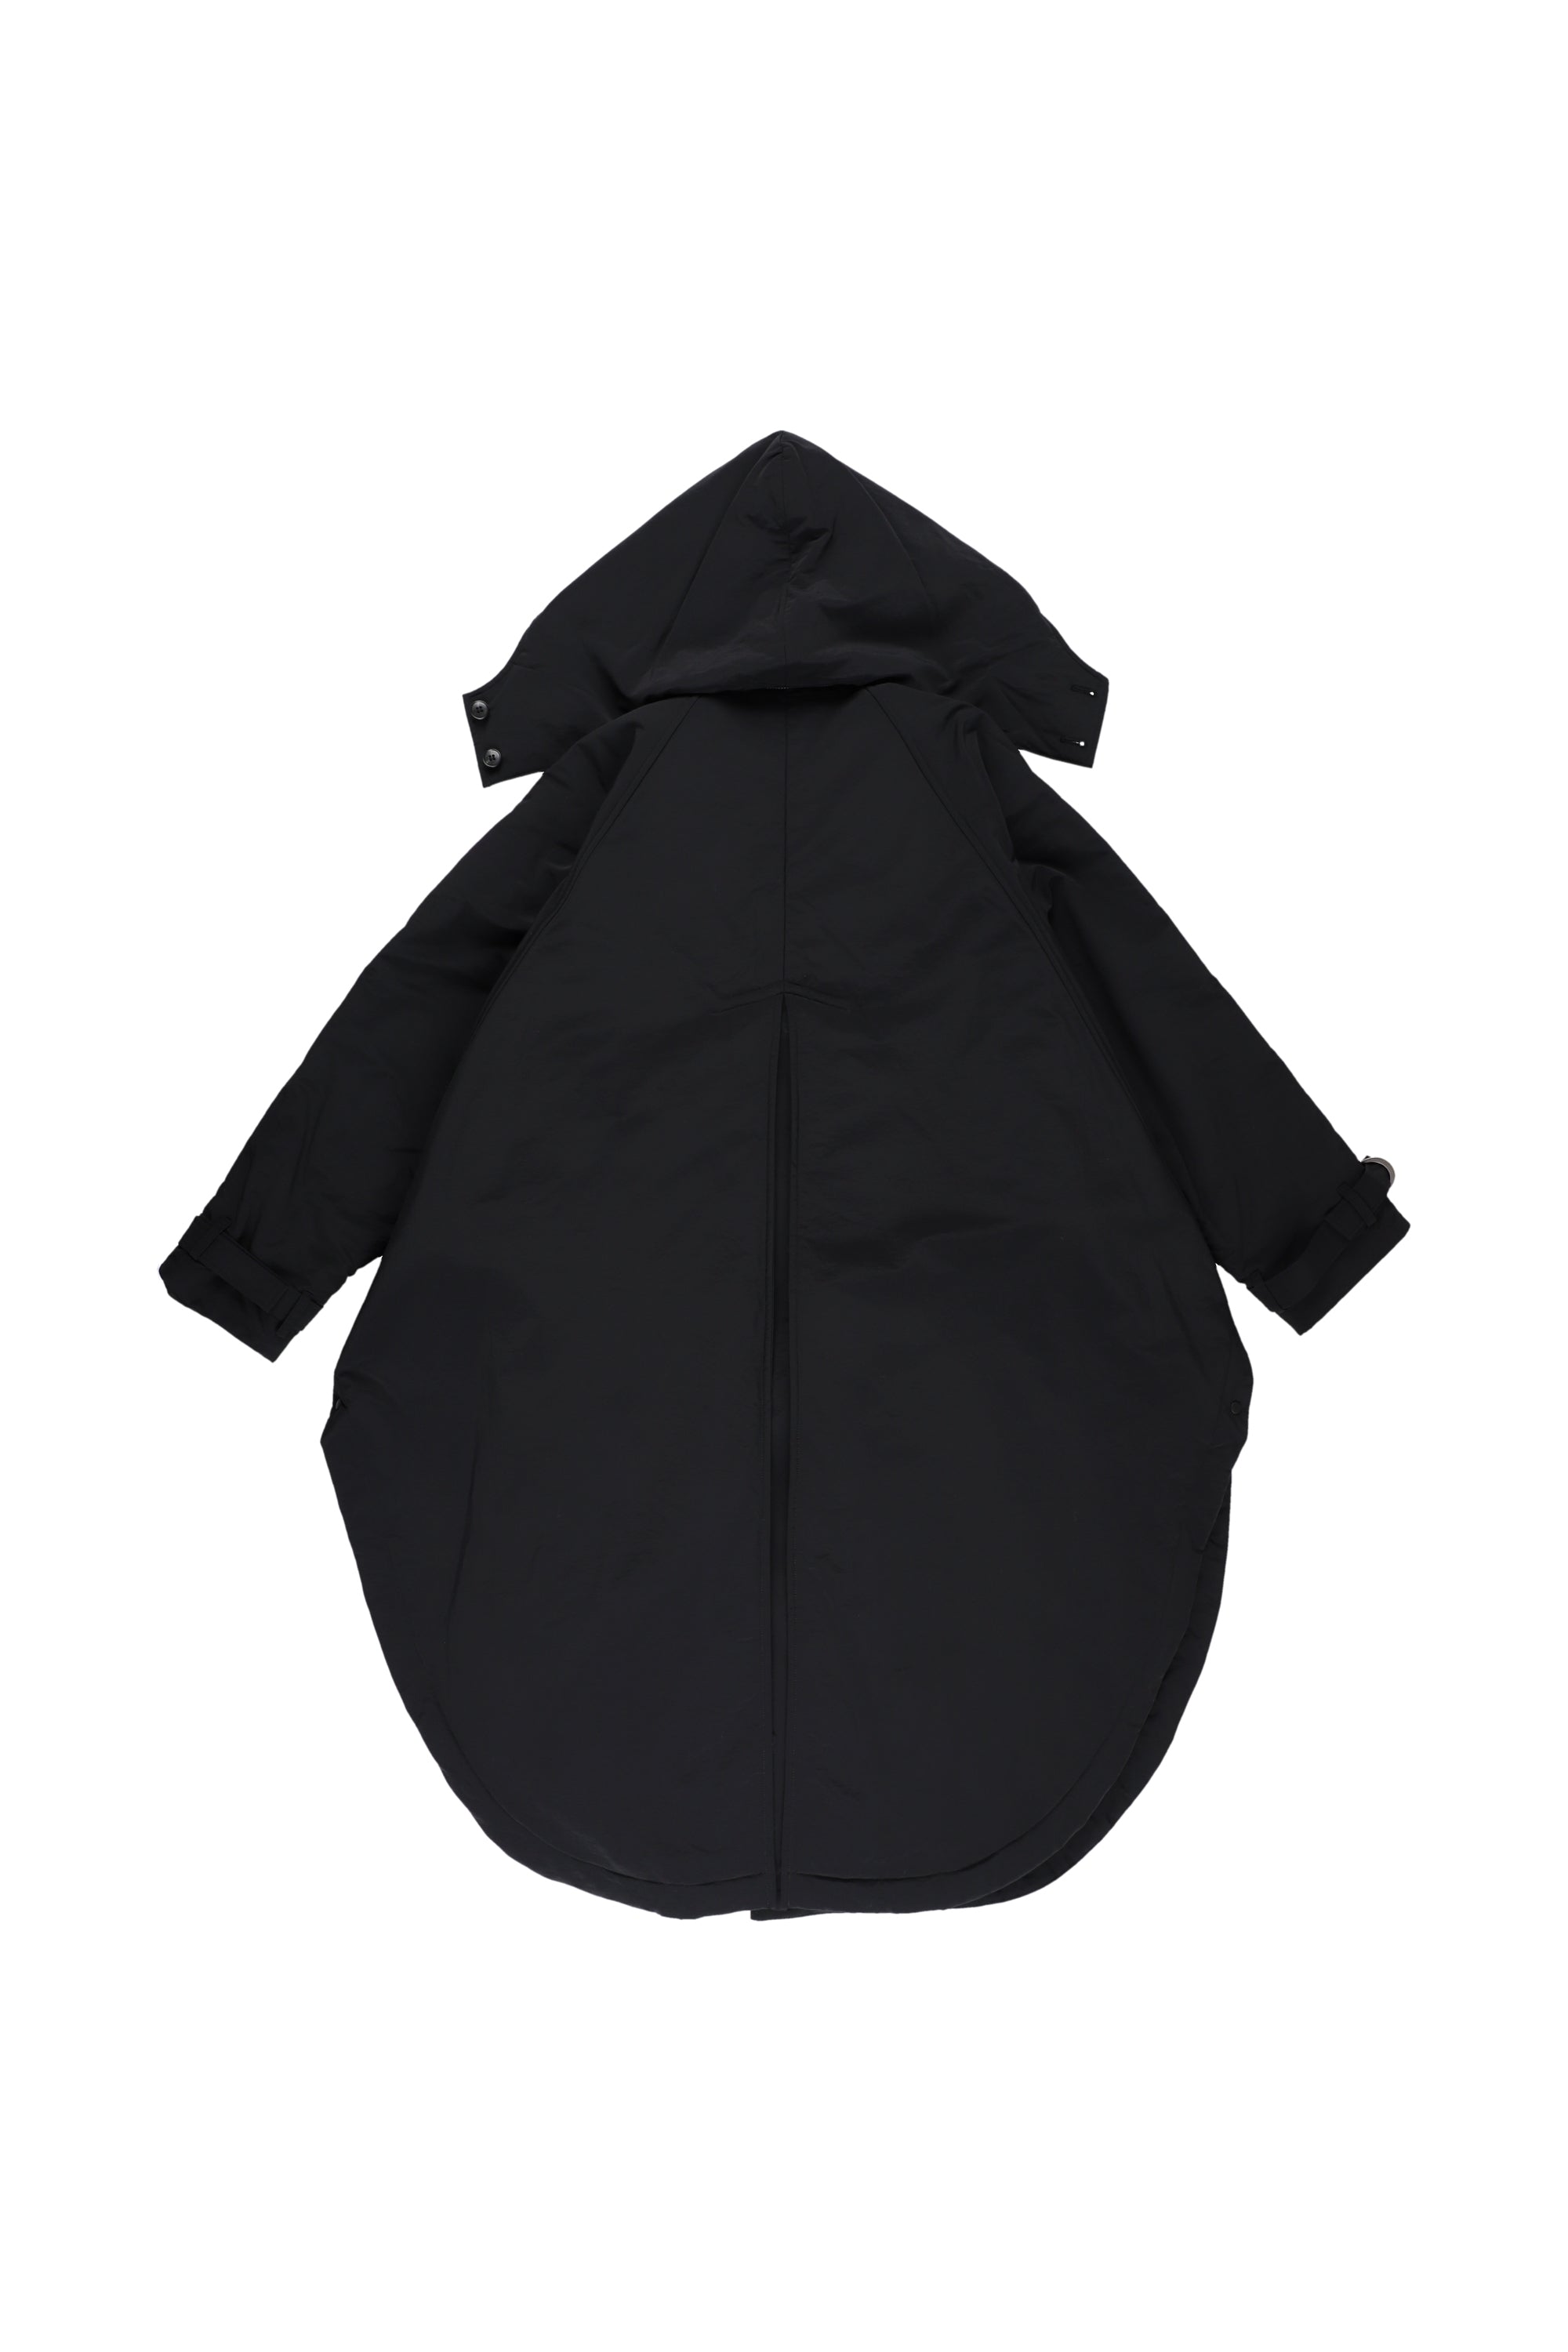 Poncho coat (black)-Unisex 